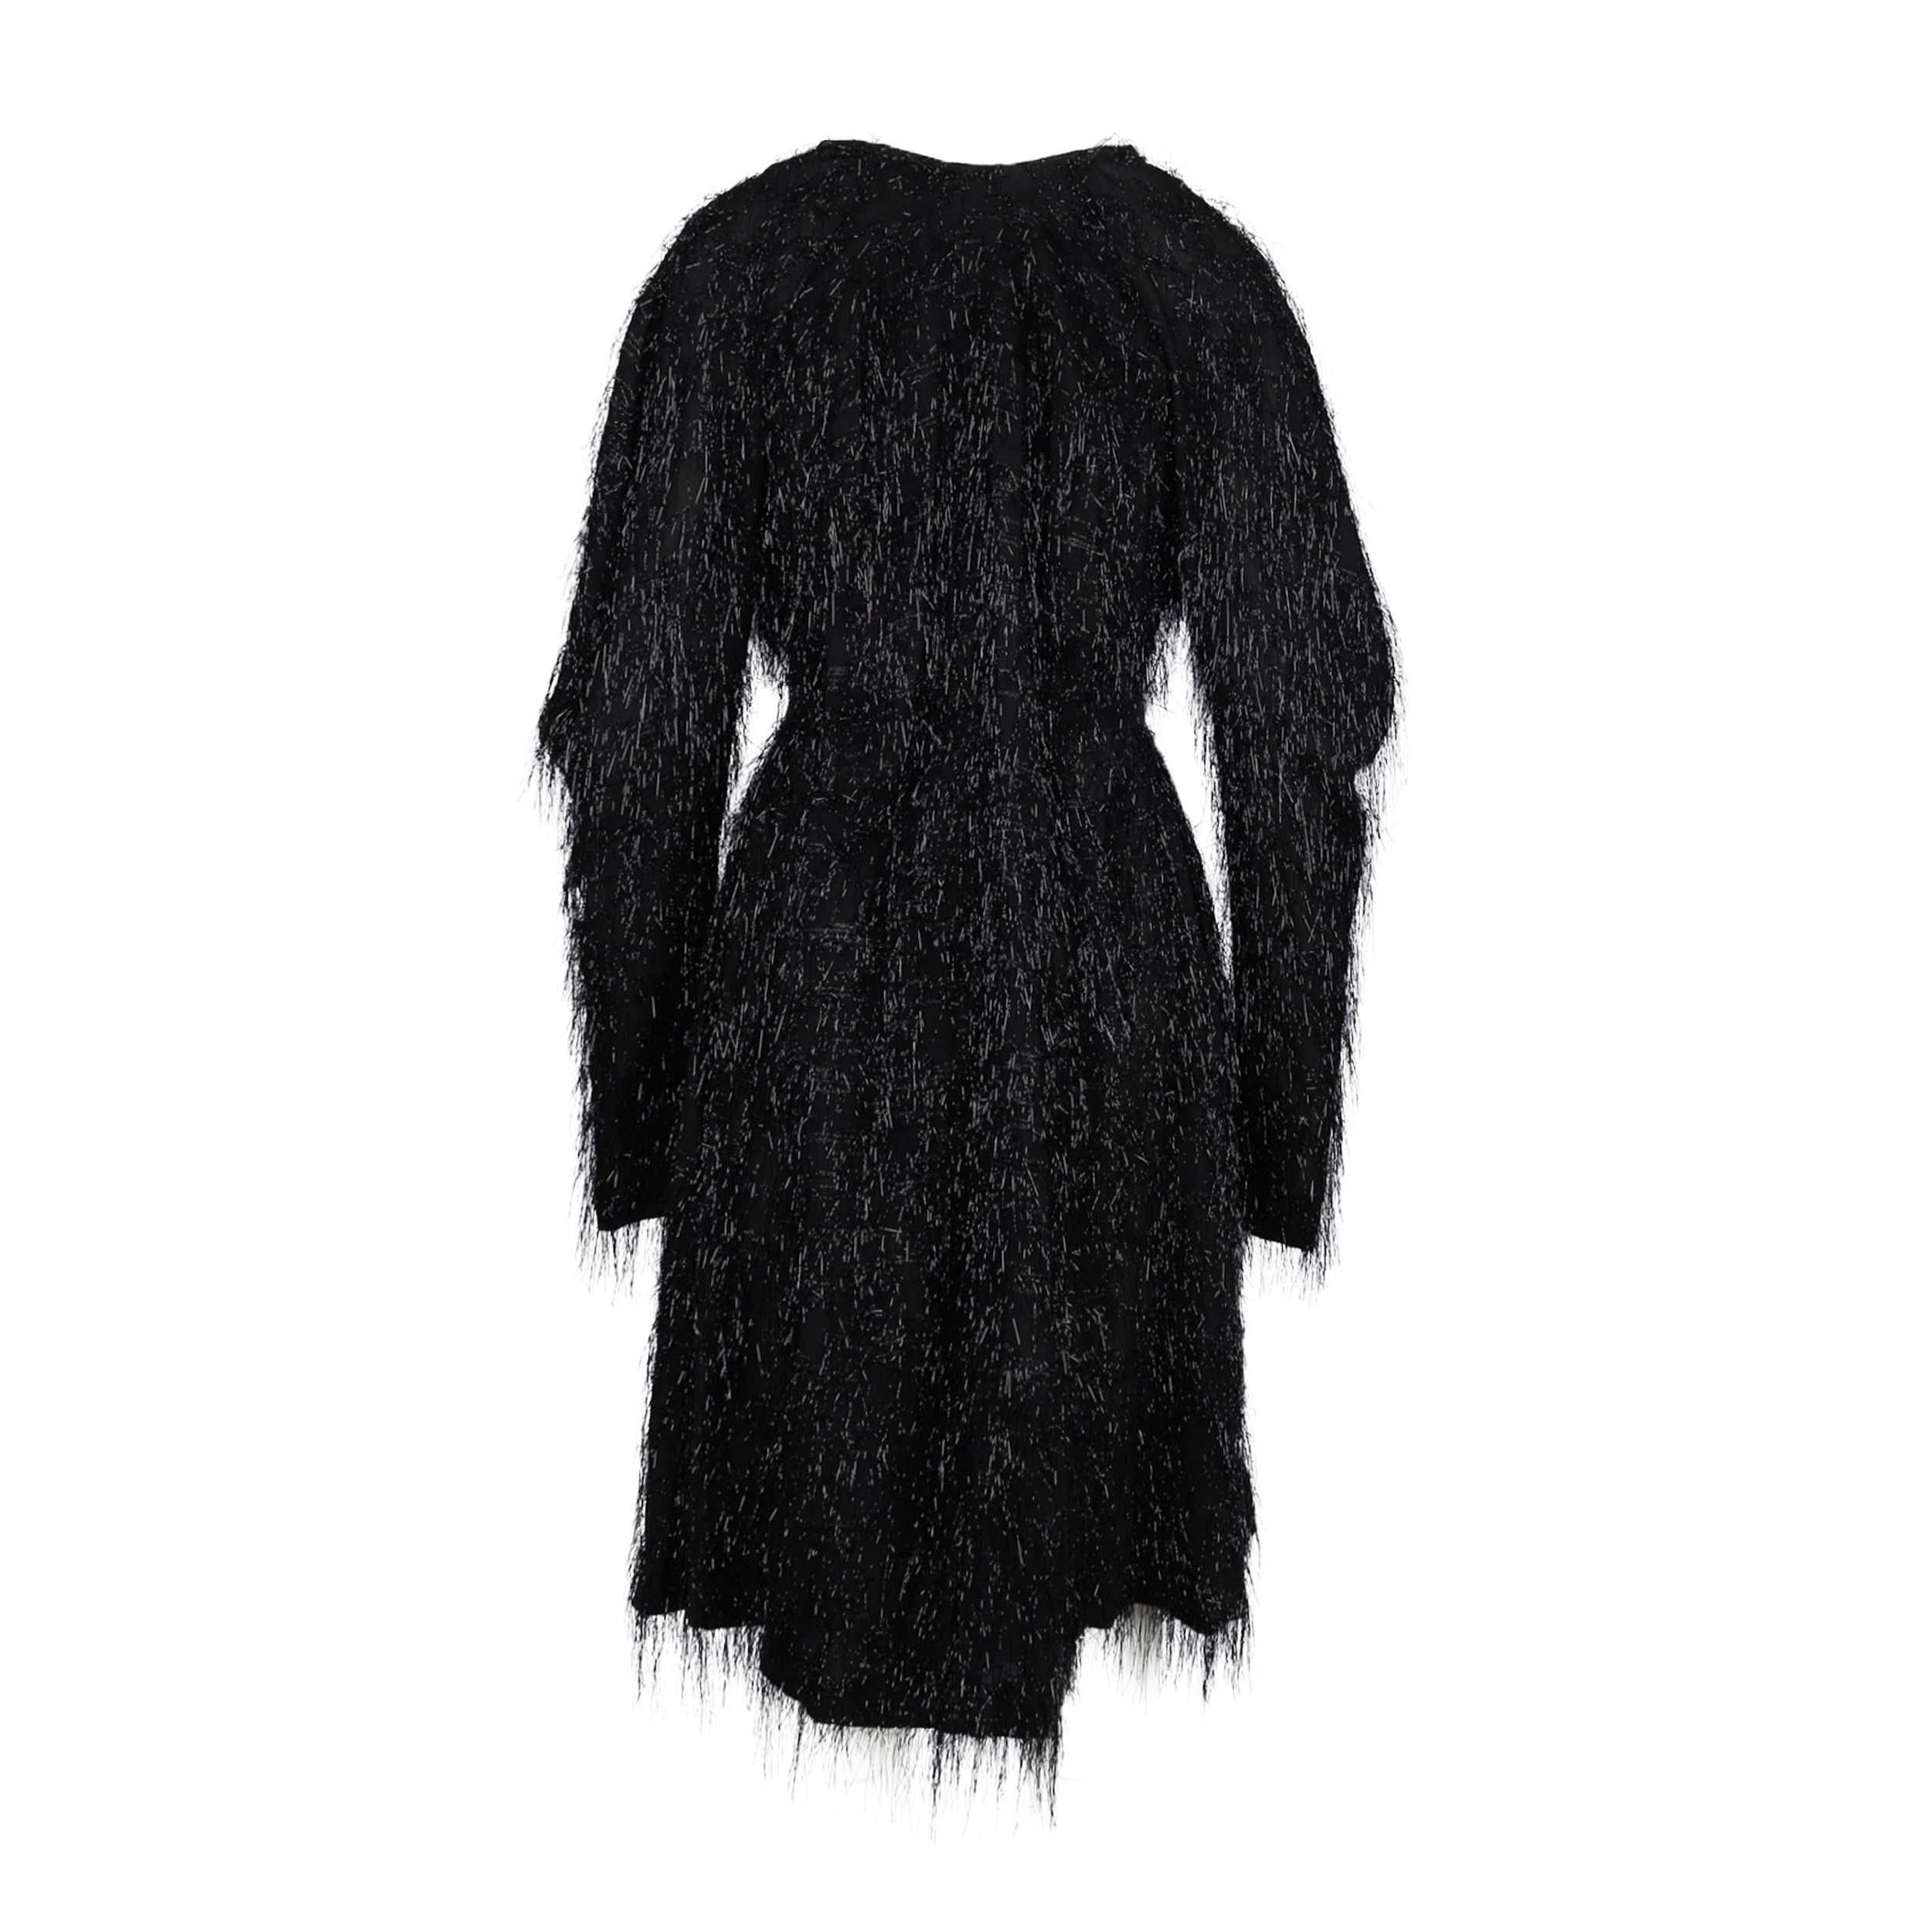 Mit diesem schwarzen Kleid mit Glitzerfransen von Vivienne Westwood schaffen Sie den Spagat zwischen modernem Glamour und unkonventionellem Chic. Dieses Chiffonteil aus der Sonderkollektion ist zusätzlich mit minimalen Schimmerstrichen verziert und